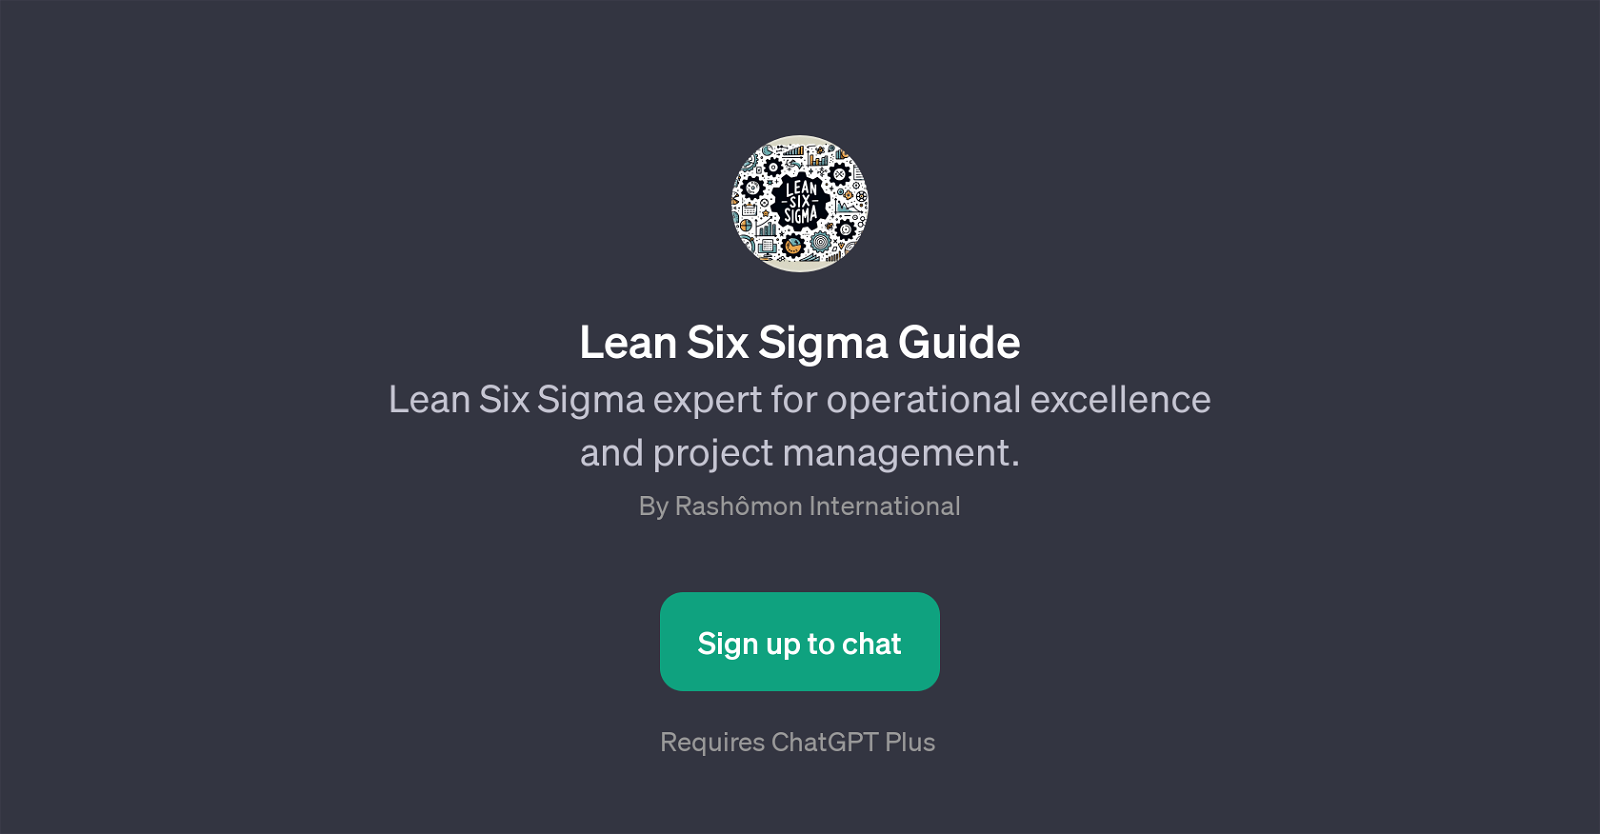 Lean Six Sigma Guide website